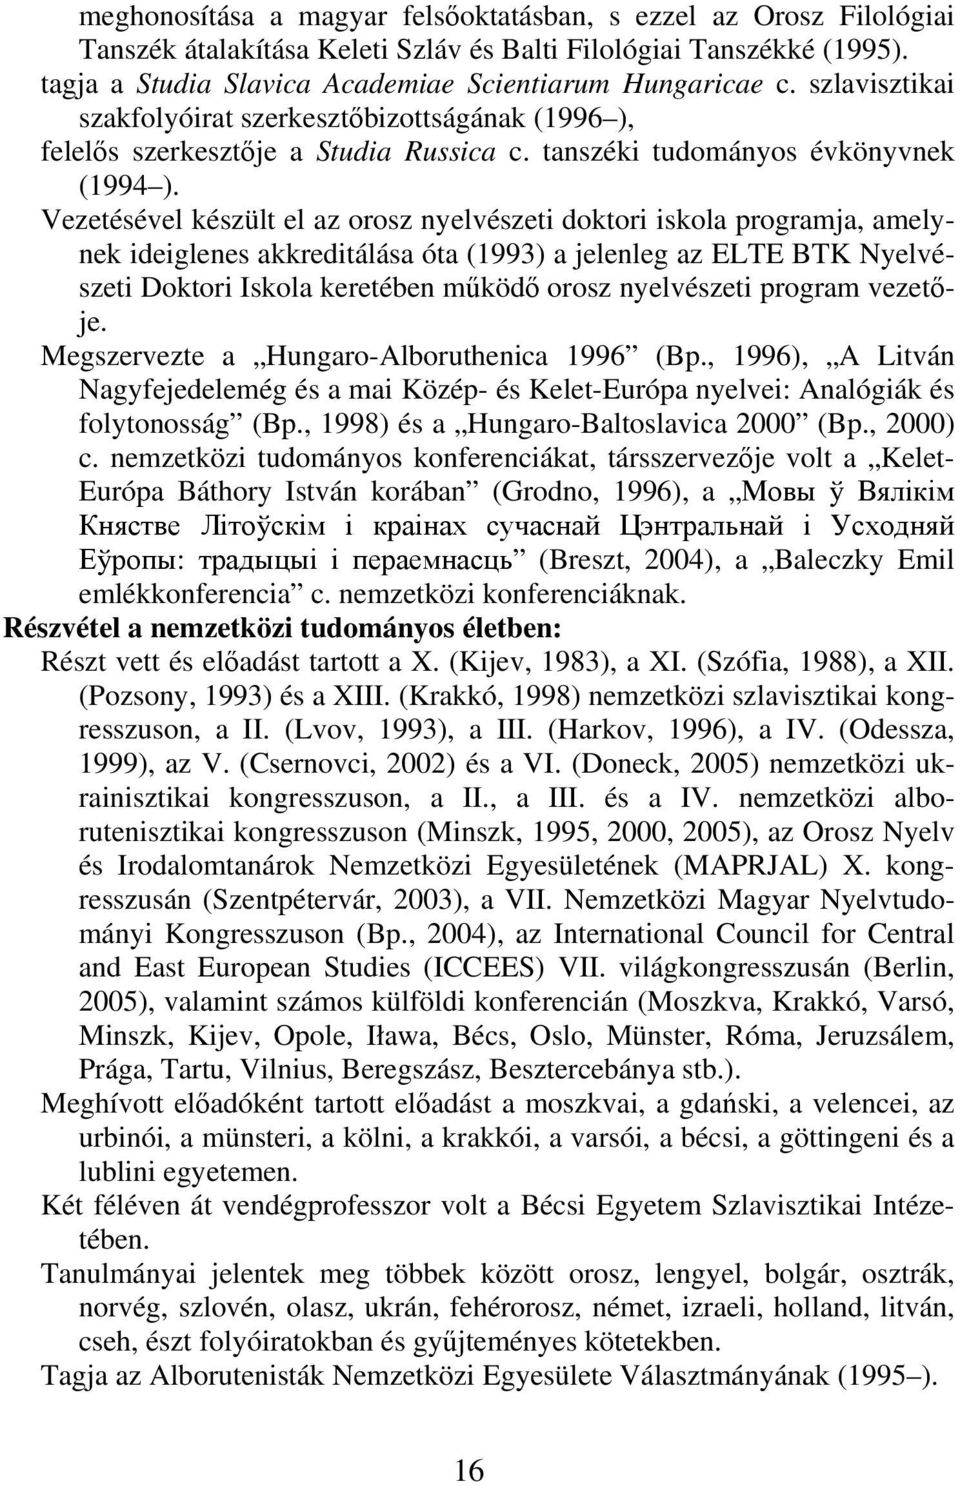 Vezetésével készült el az orosz nyelvészeti doktori iskola programja, amelynek ideiglenes akkreditálása óta (1993) a jelenleg az ELTE BTK Nyelvészeti Doktori Iskola keretében működő orosz nyelvészeti